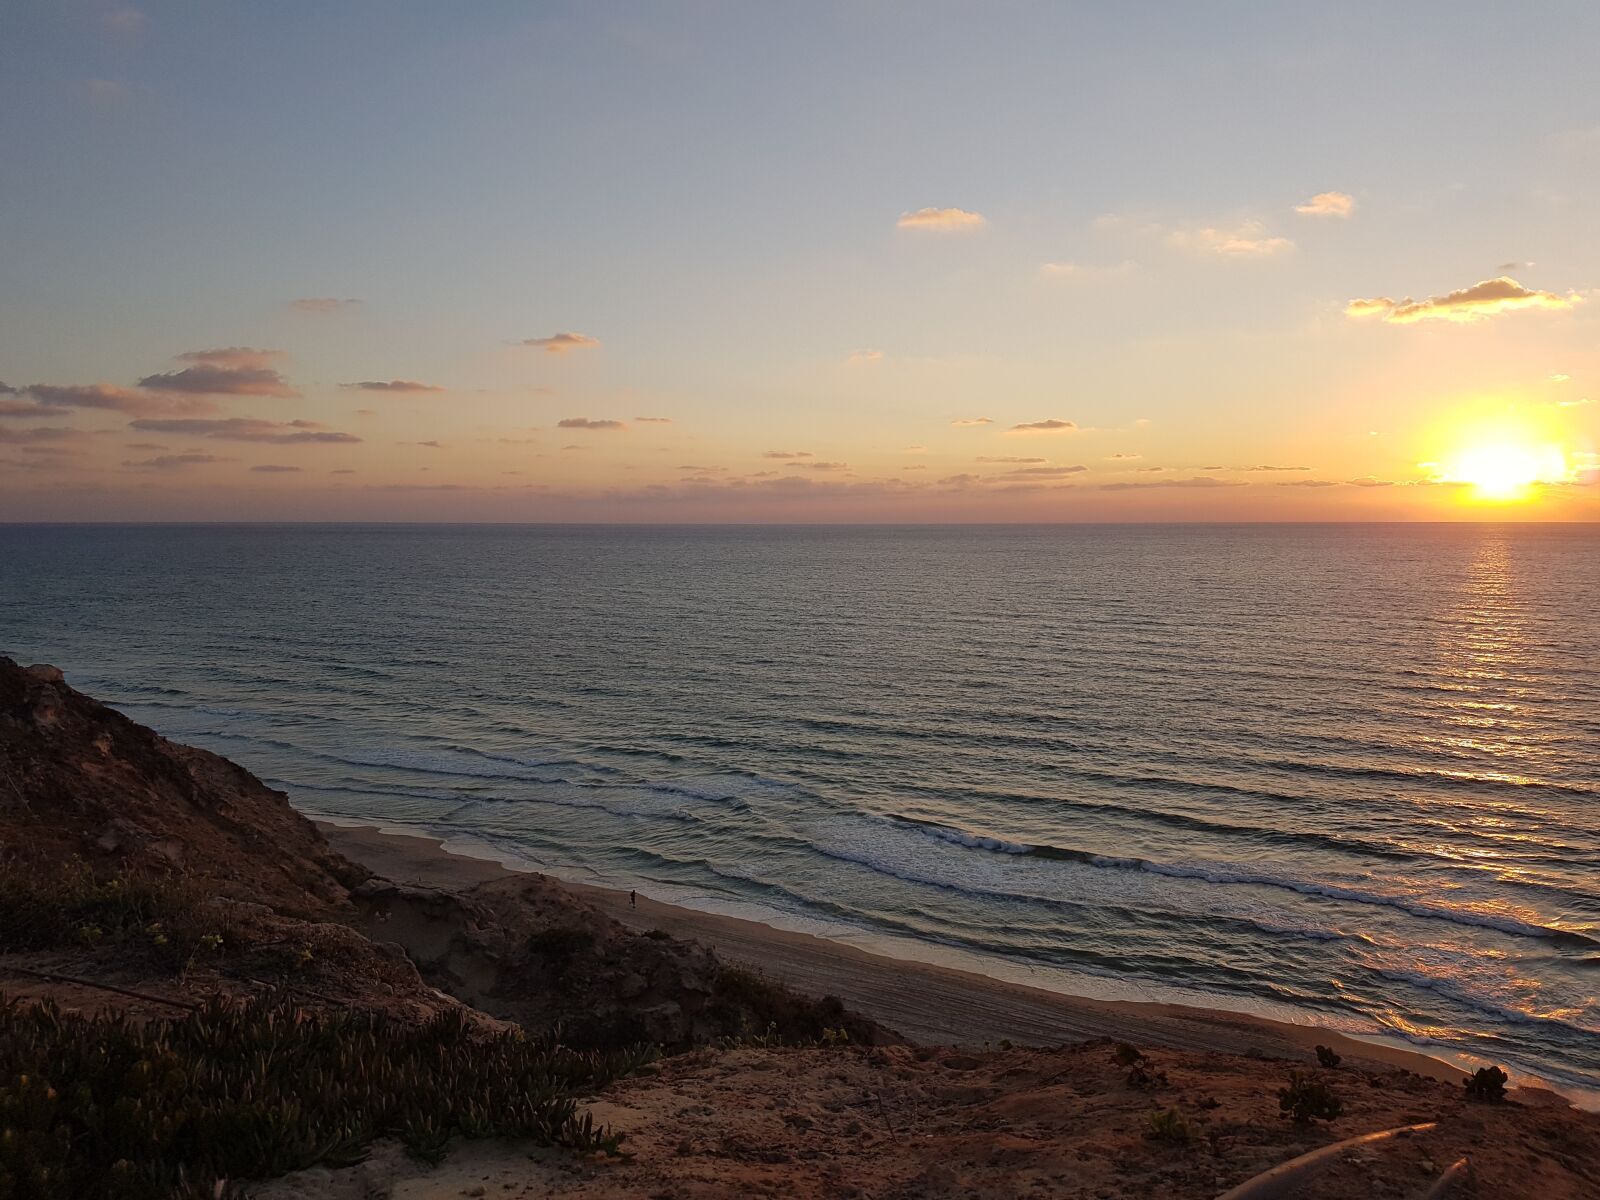 Samsung Galaxy S7 sample photo. Sunset, sea, sun photography